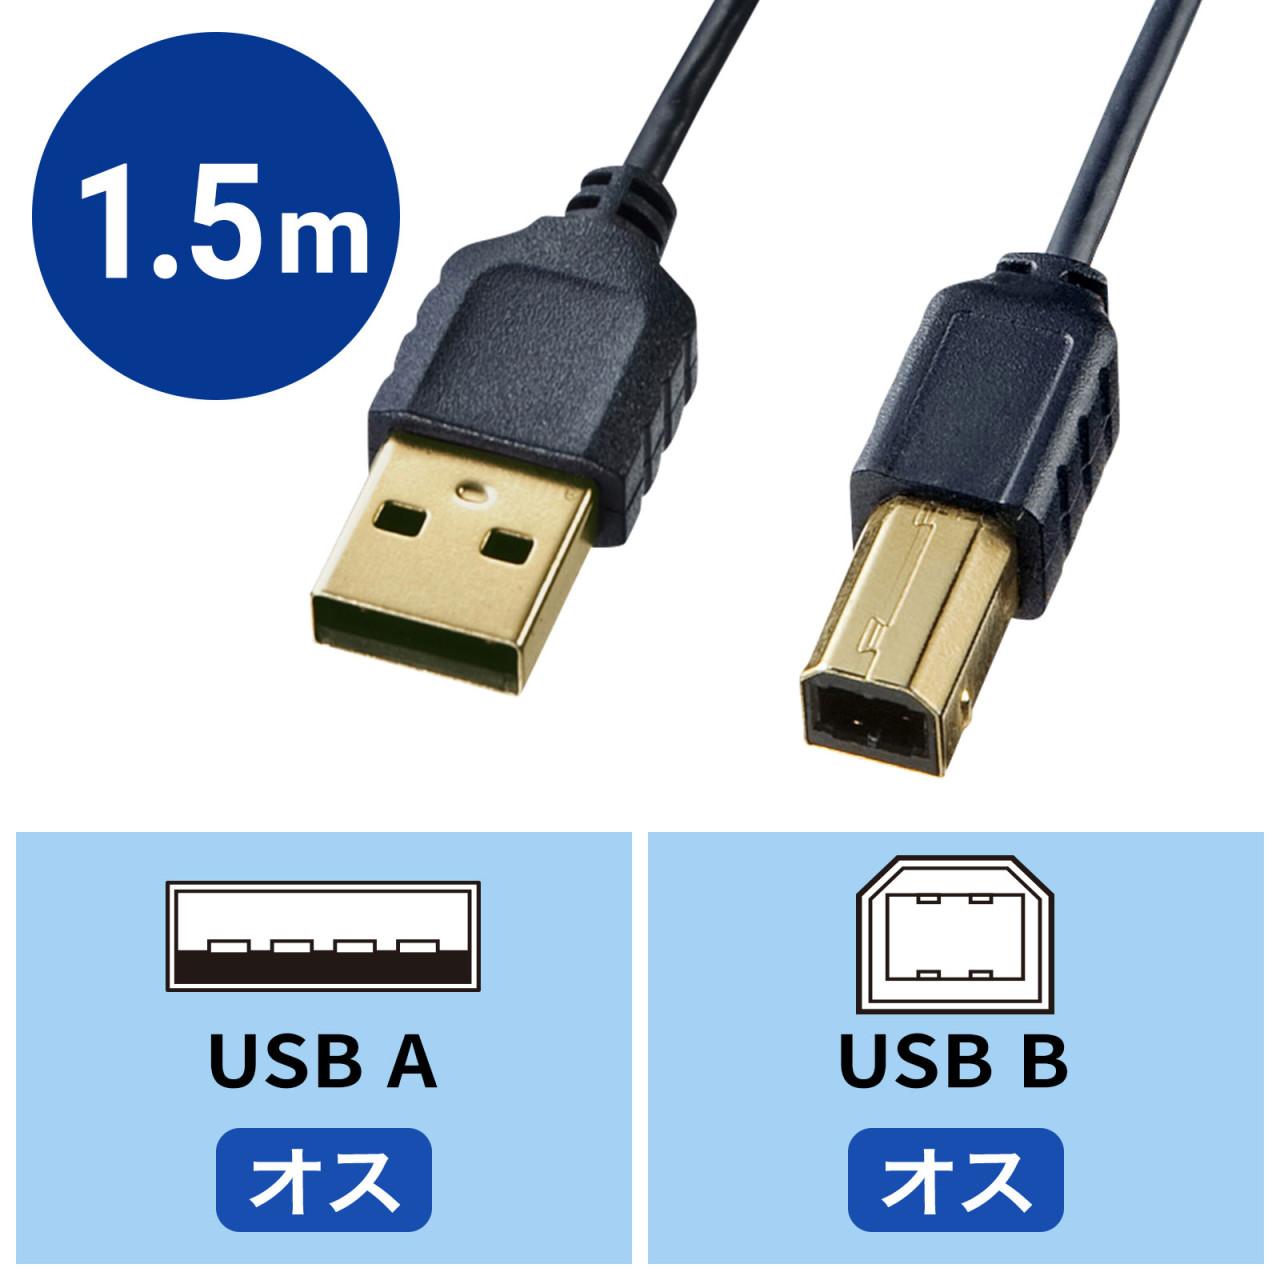 プリンターケーブル USB2.0ケーブル TypeBケーブル 高耐久性1.5m パソコン プリンター接続ケーブル 480 Mbps高速転送